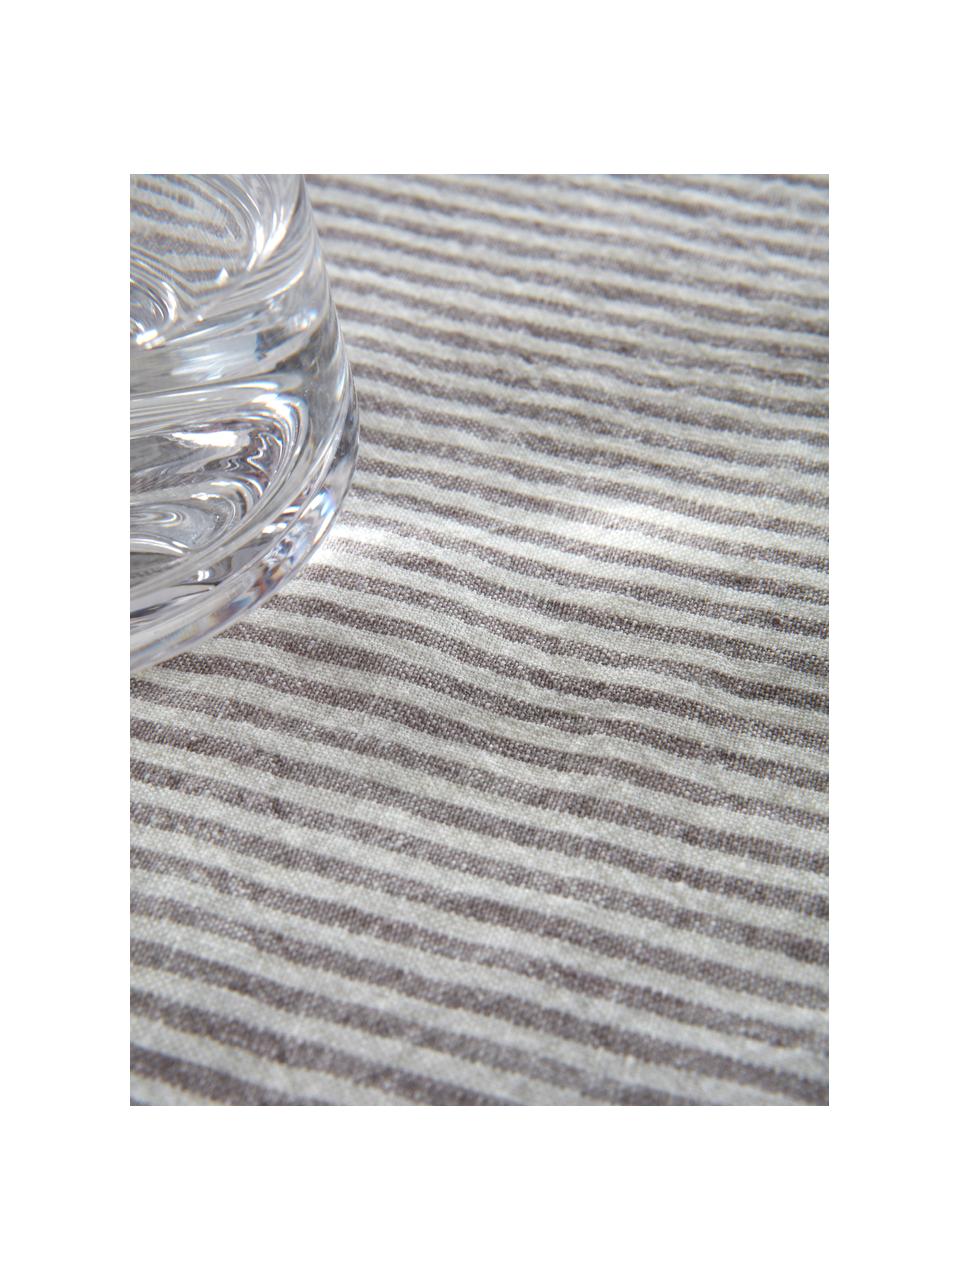 Tovaglia a righe in lino grigio/bianco panna Alina, 100% lino, certificato lino europeo, Grigio, bianco crema, Per 4-6 persone (Larg. 145 x Lung. 200 cm)